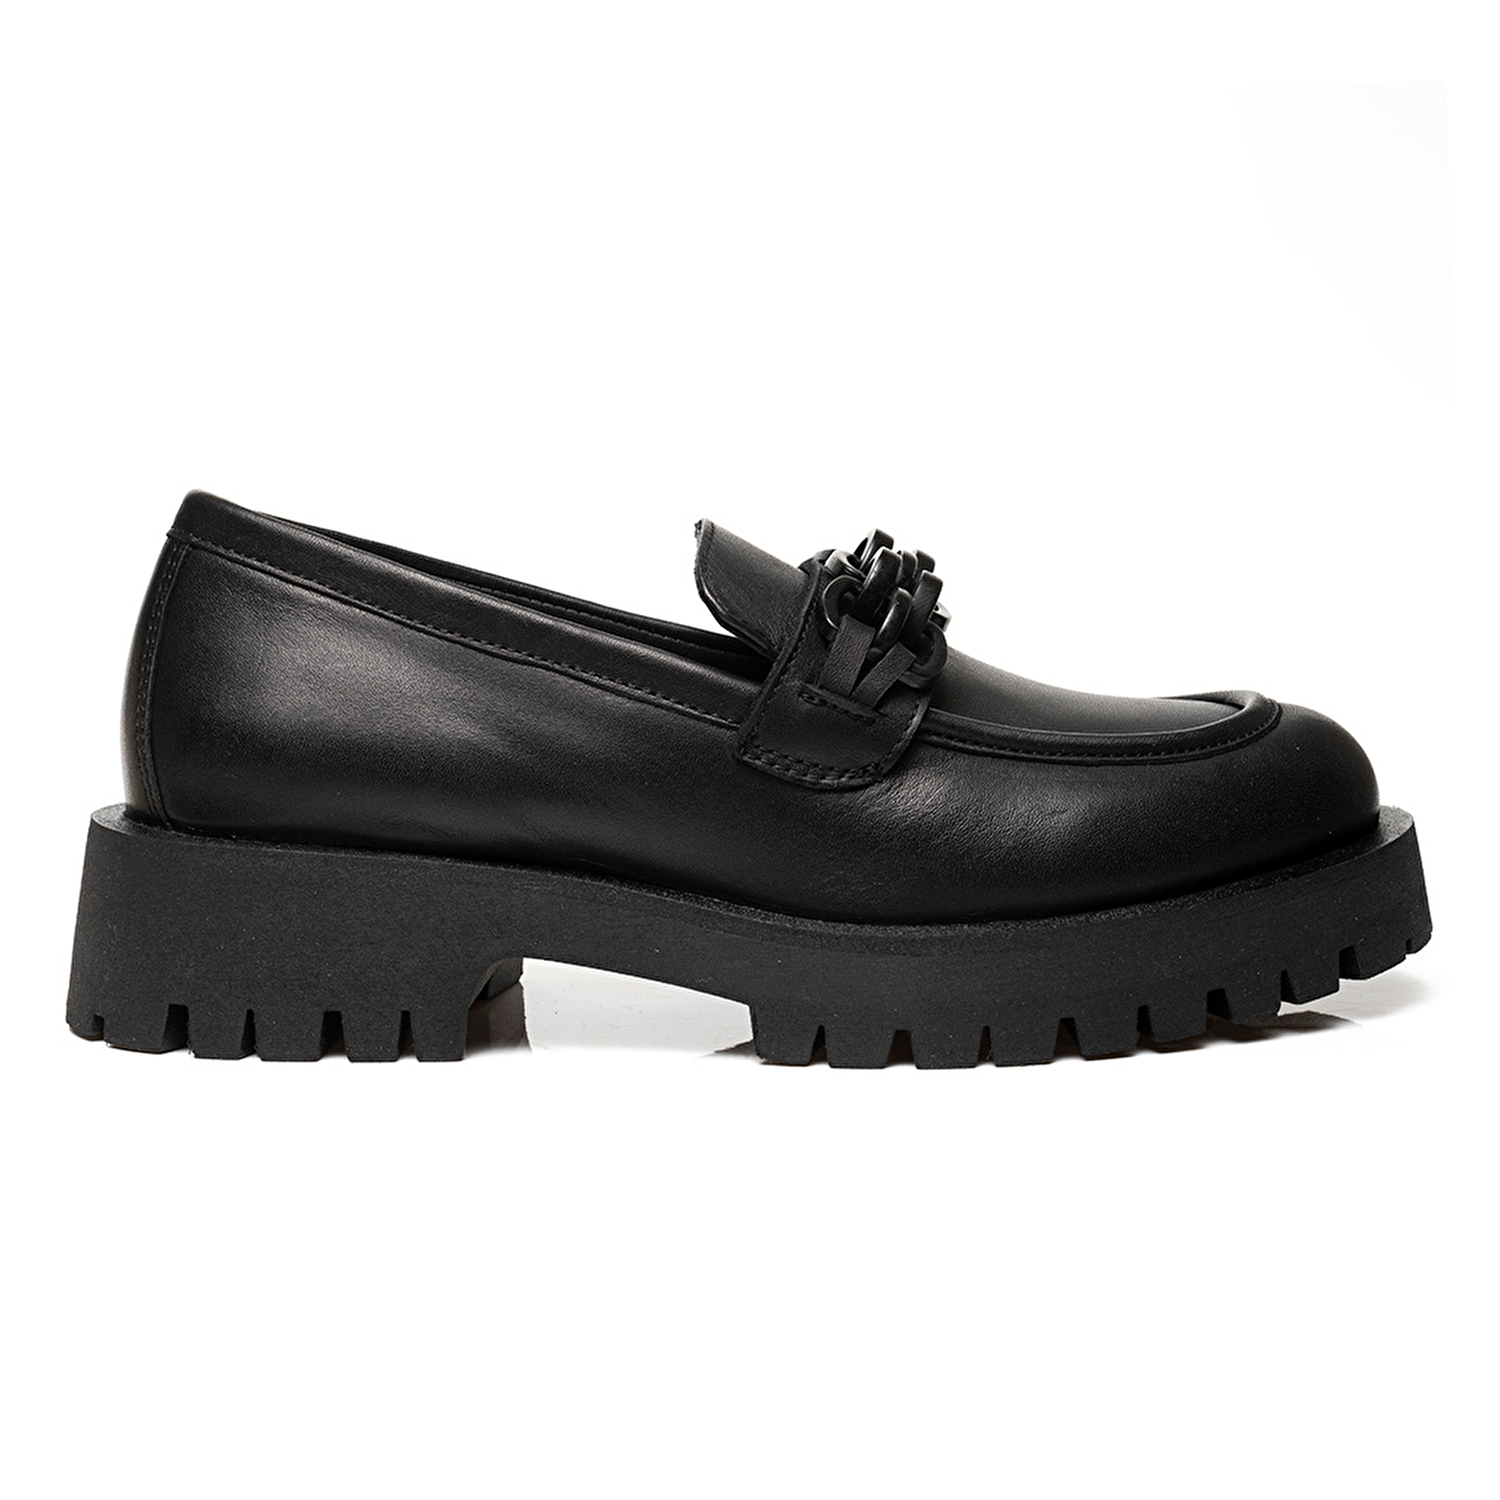 Kadın Siyah Deri Hakiki Deri Loafer Ayakkabı 3K2UA31005-1